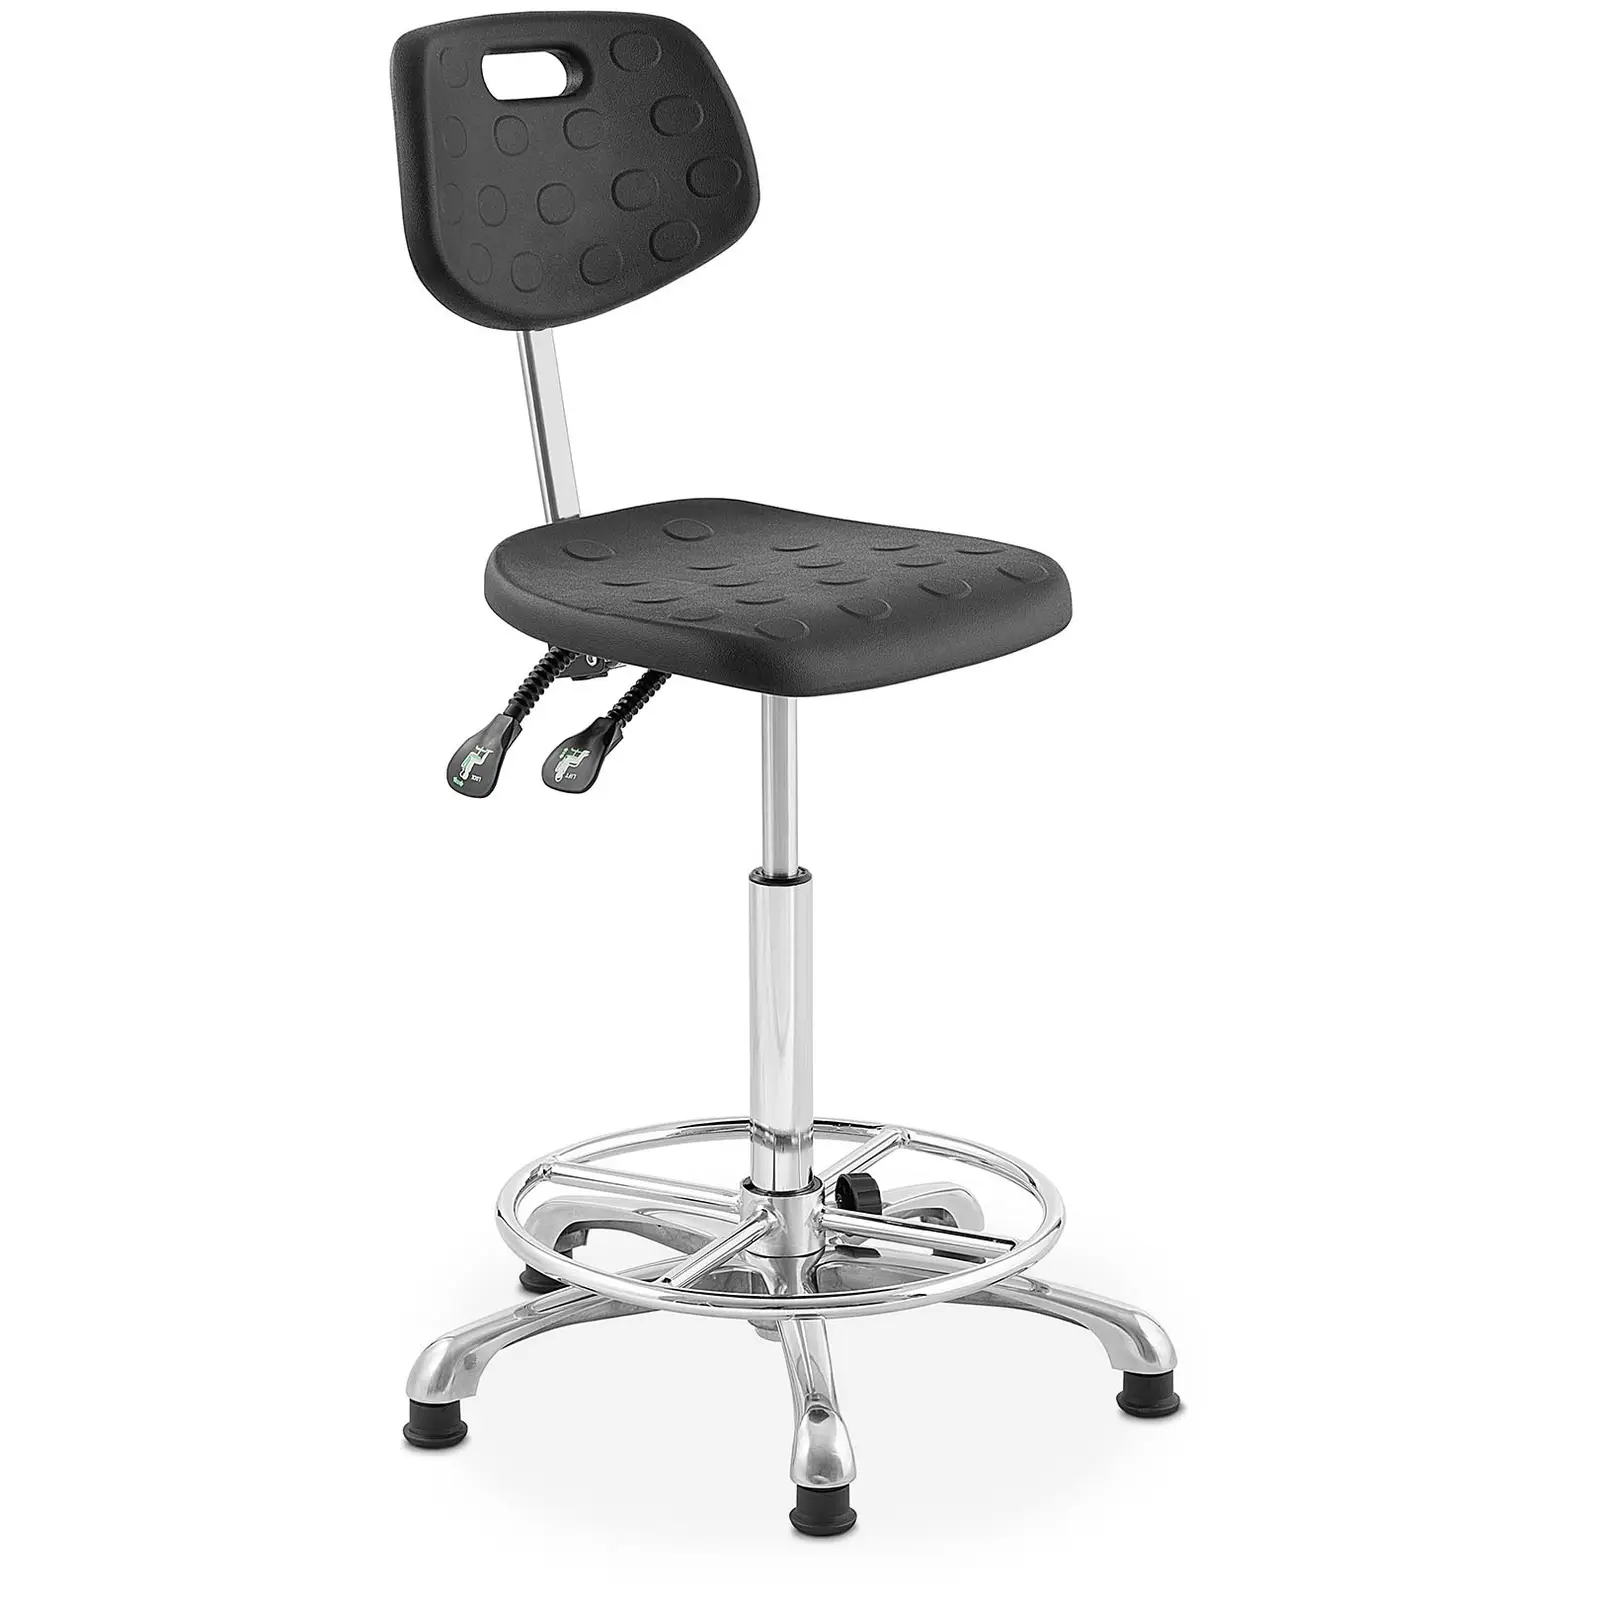 Βιομηχανική καρέκλα - 120 kg - Black - ρυθμιζόμενο ύψος από 515 - 780 mm